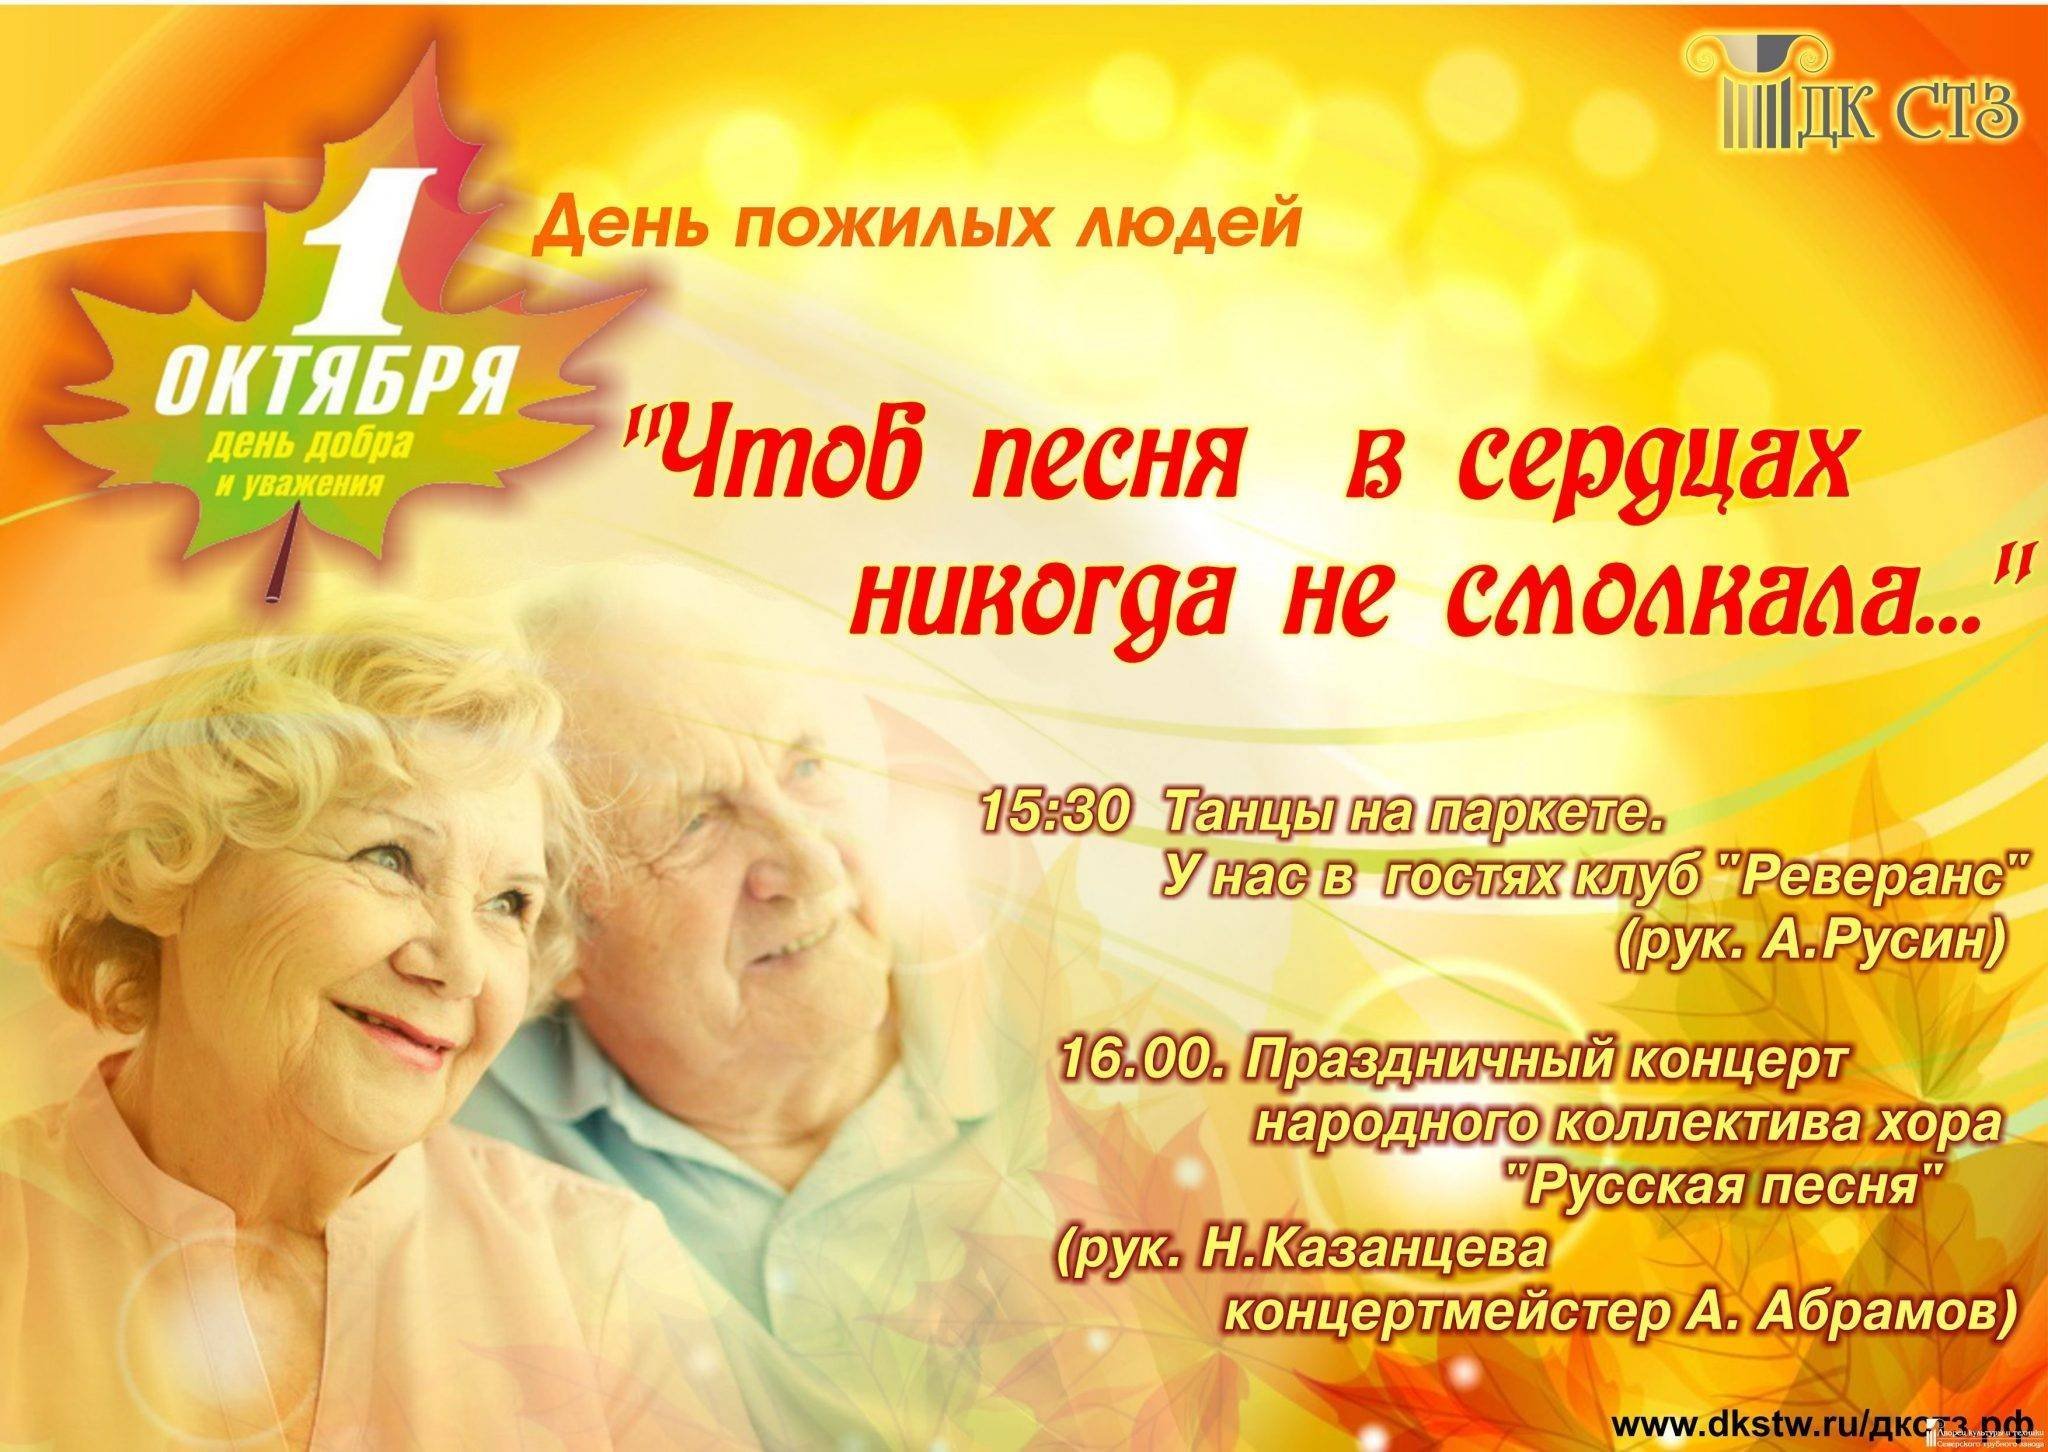 Поздравление с днем пожилого возраста. День пожилых. Поздравление с днем пожилого человека. Пожелания на день пожилых людей. Праздник день пожилого человека.